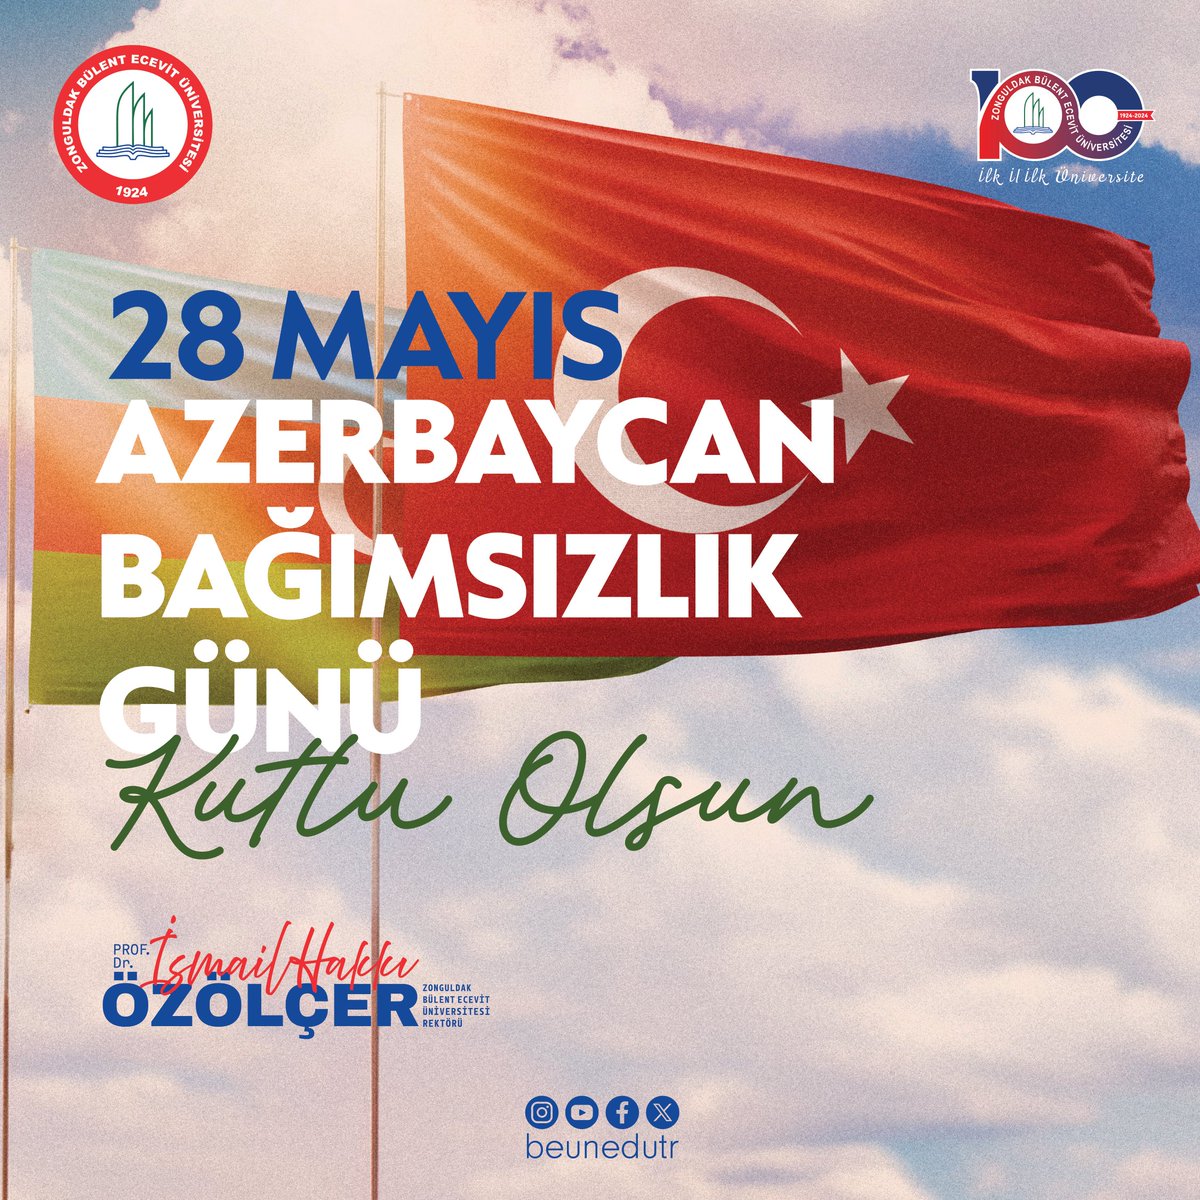 🇹🇷🇦🇿Dost ve kardeş ülke Azerbaycan'ın 28 Mayıs Bağımsızlık Günü kutlu olsun. “Tek Millet, İki Devlet” anlayışıyla her zaman bir ve beraber olmaya devam edeceğiz. @ihozolcer #gelecekburadasekillenir #ilkililküniversite